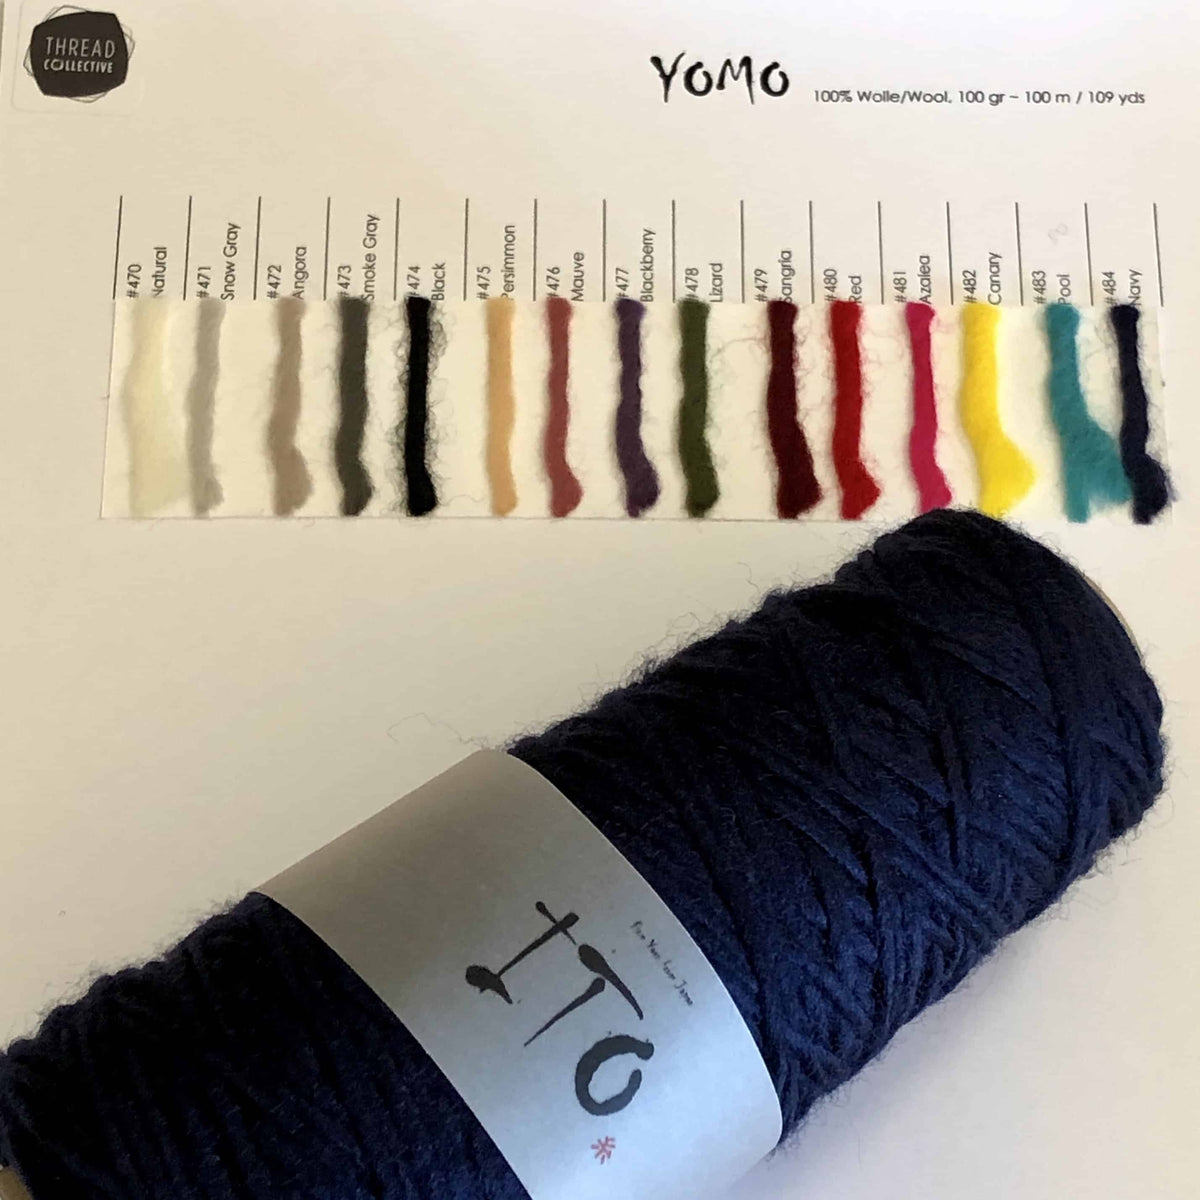 ITO Yomo Colour Card - Thread Collective Australia